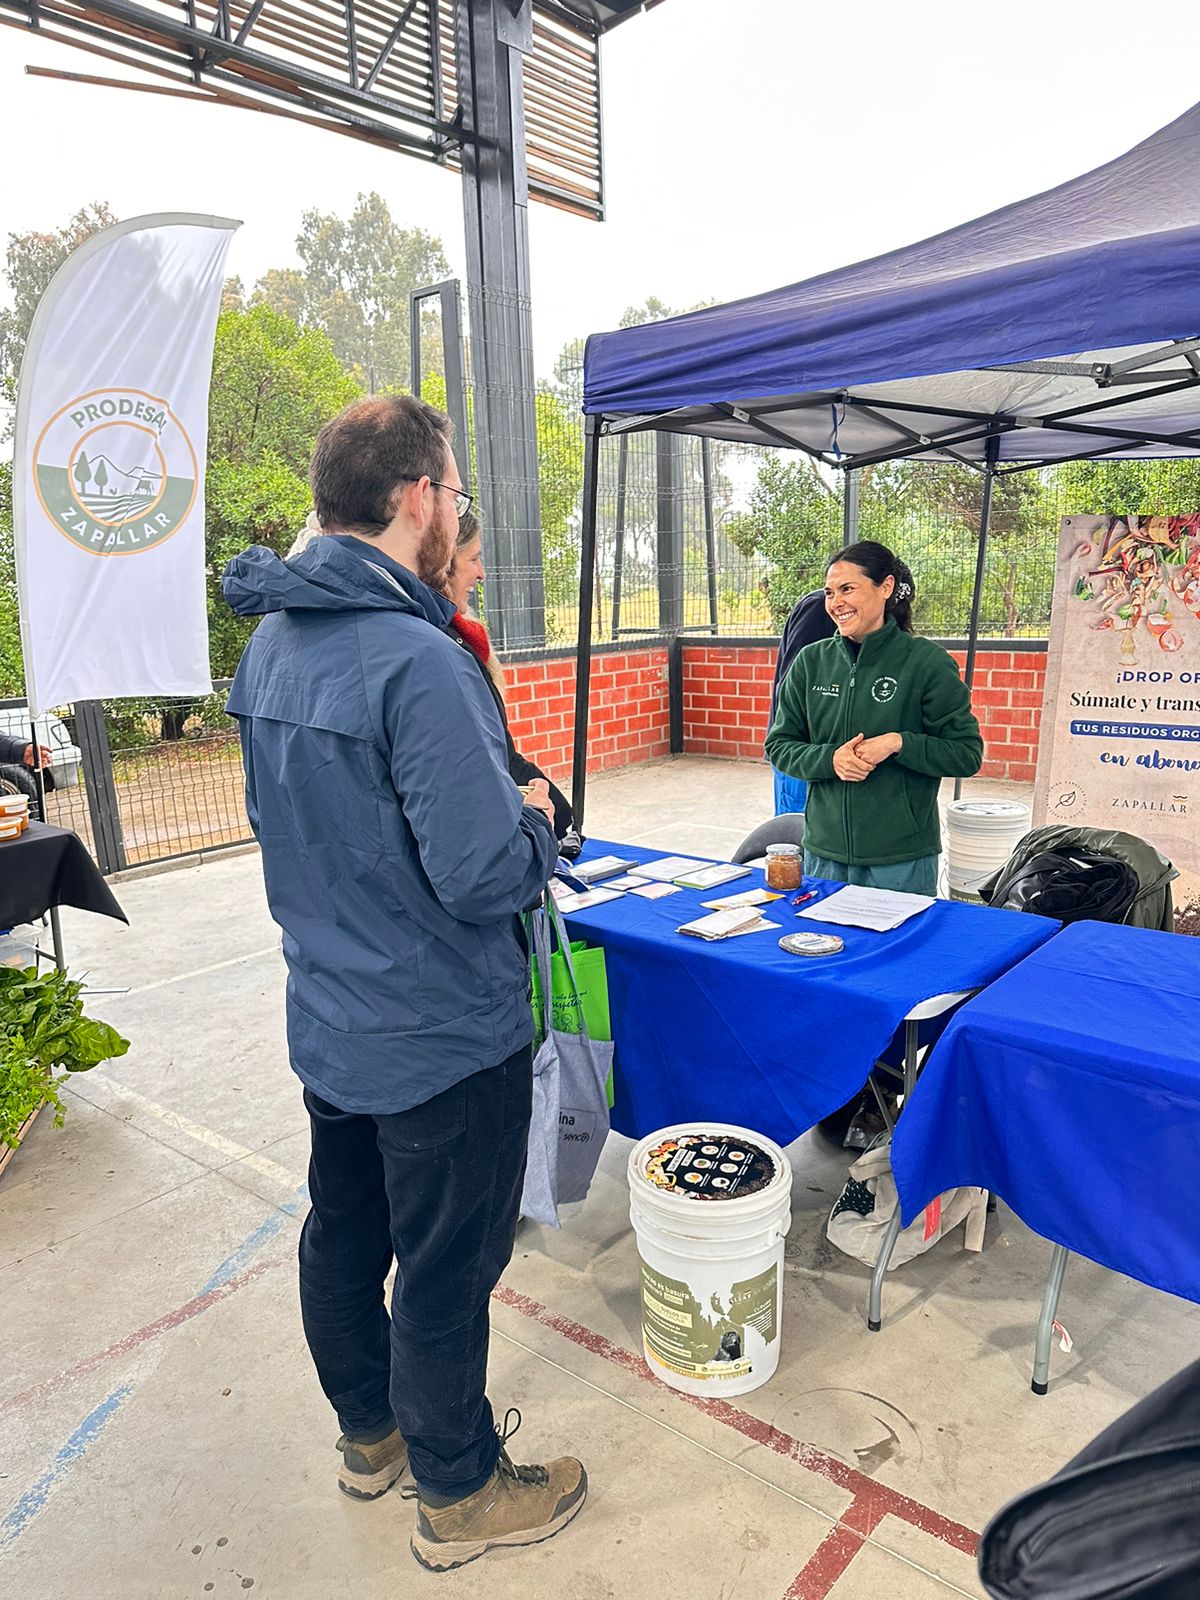 Local Compost impulsa la conciencia ambiental en la Feria Laboral de Zapallar